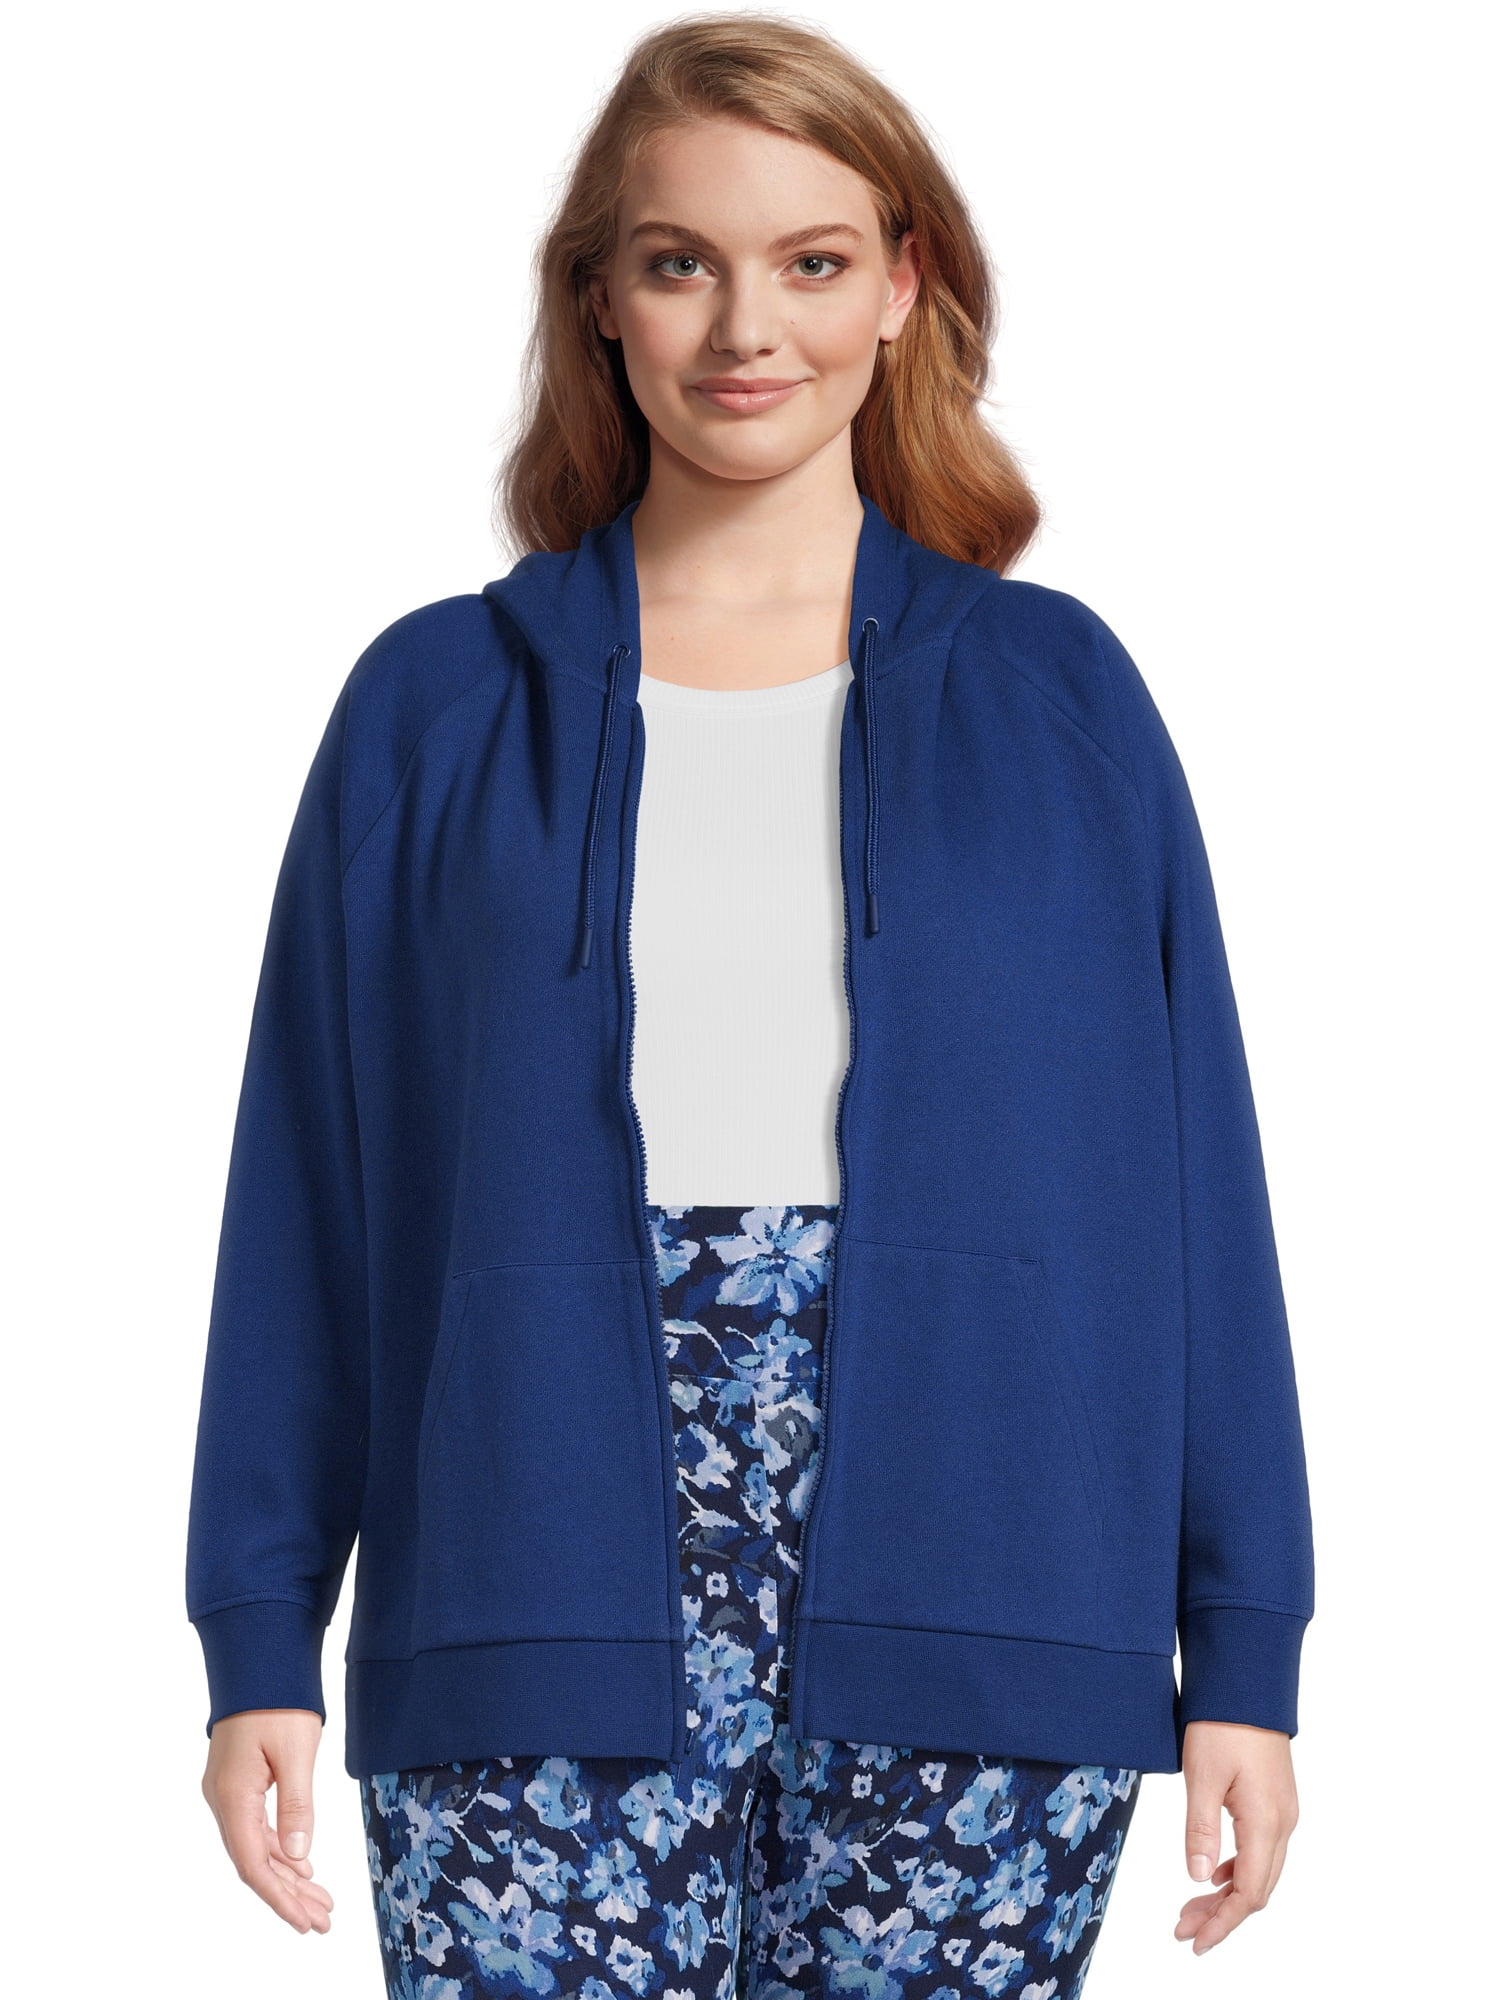 Terra & Sky Women's Plus Size Zip-Front Hoodie - Walmart.com